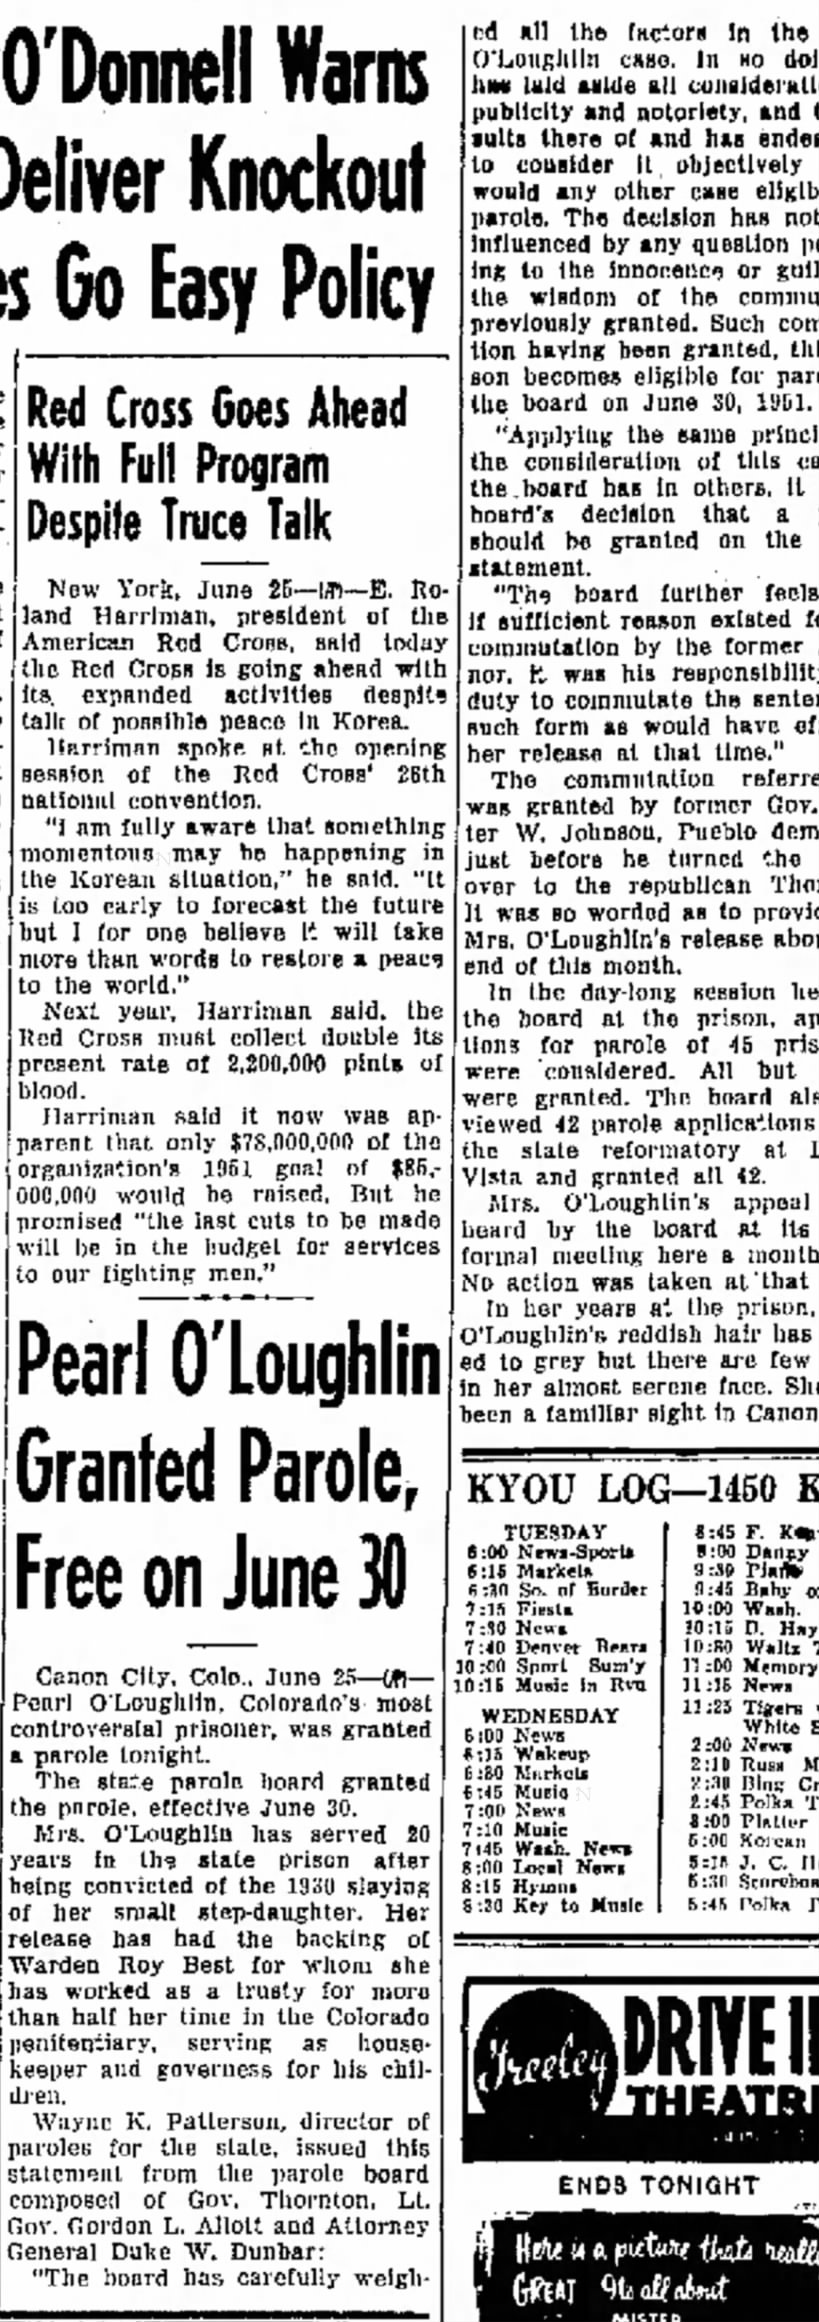 Pearl O'Loughlin paroled